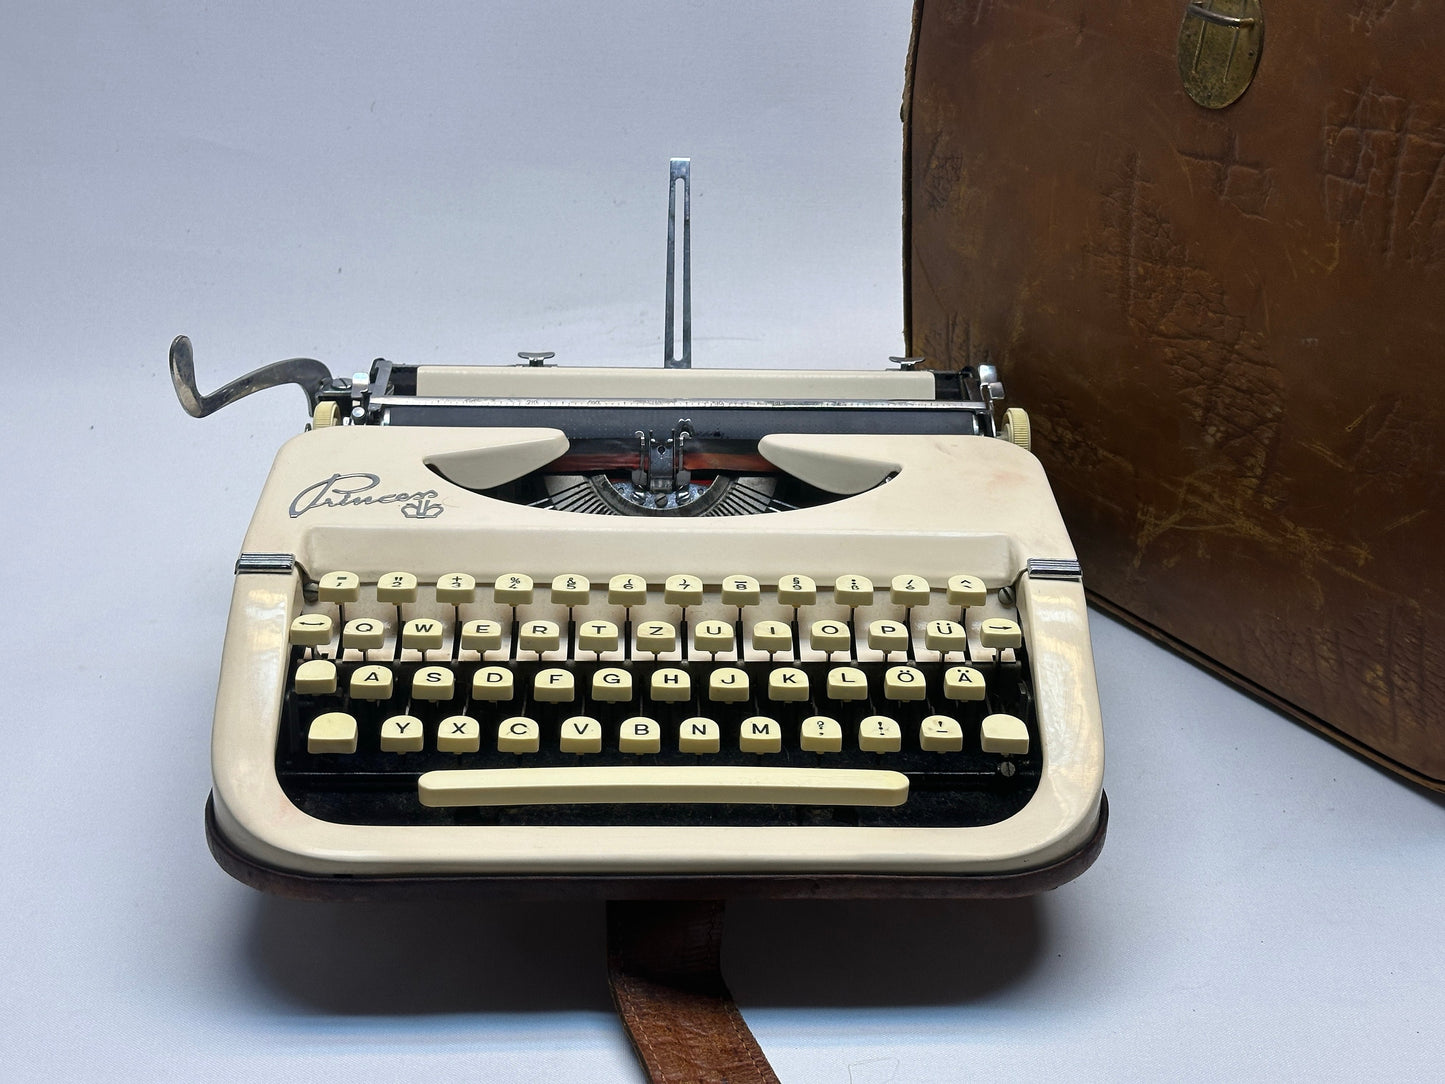 Princess Typewriter, 1965 Model with White Typewriter and Keyboard, Type writer - Antique Typewriter